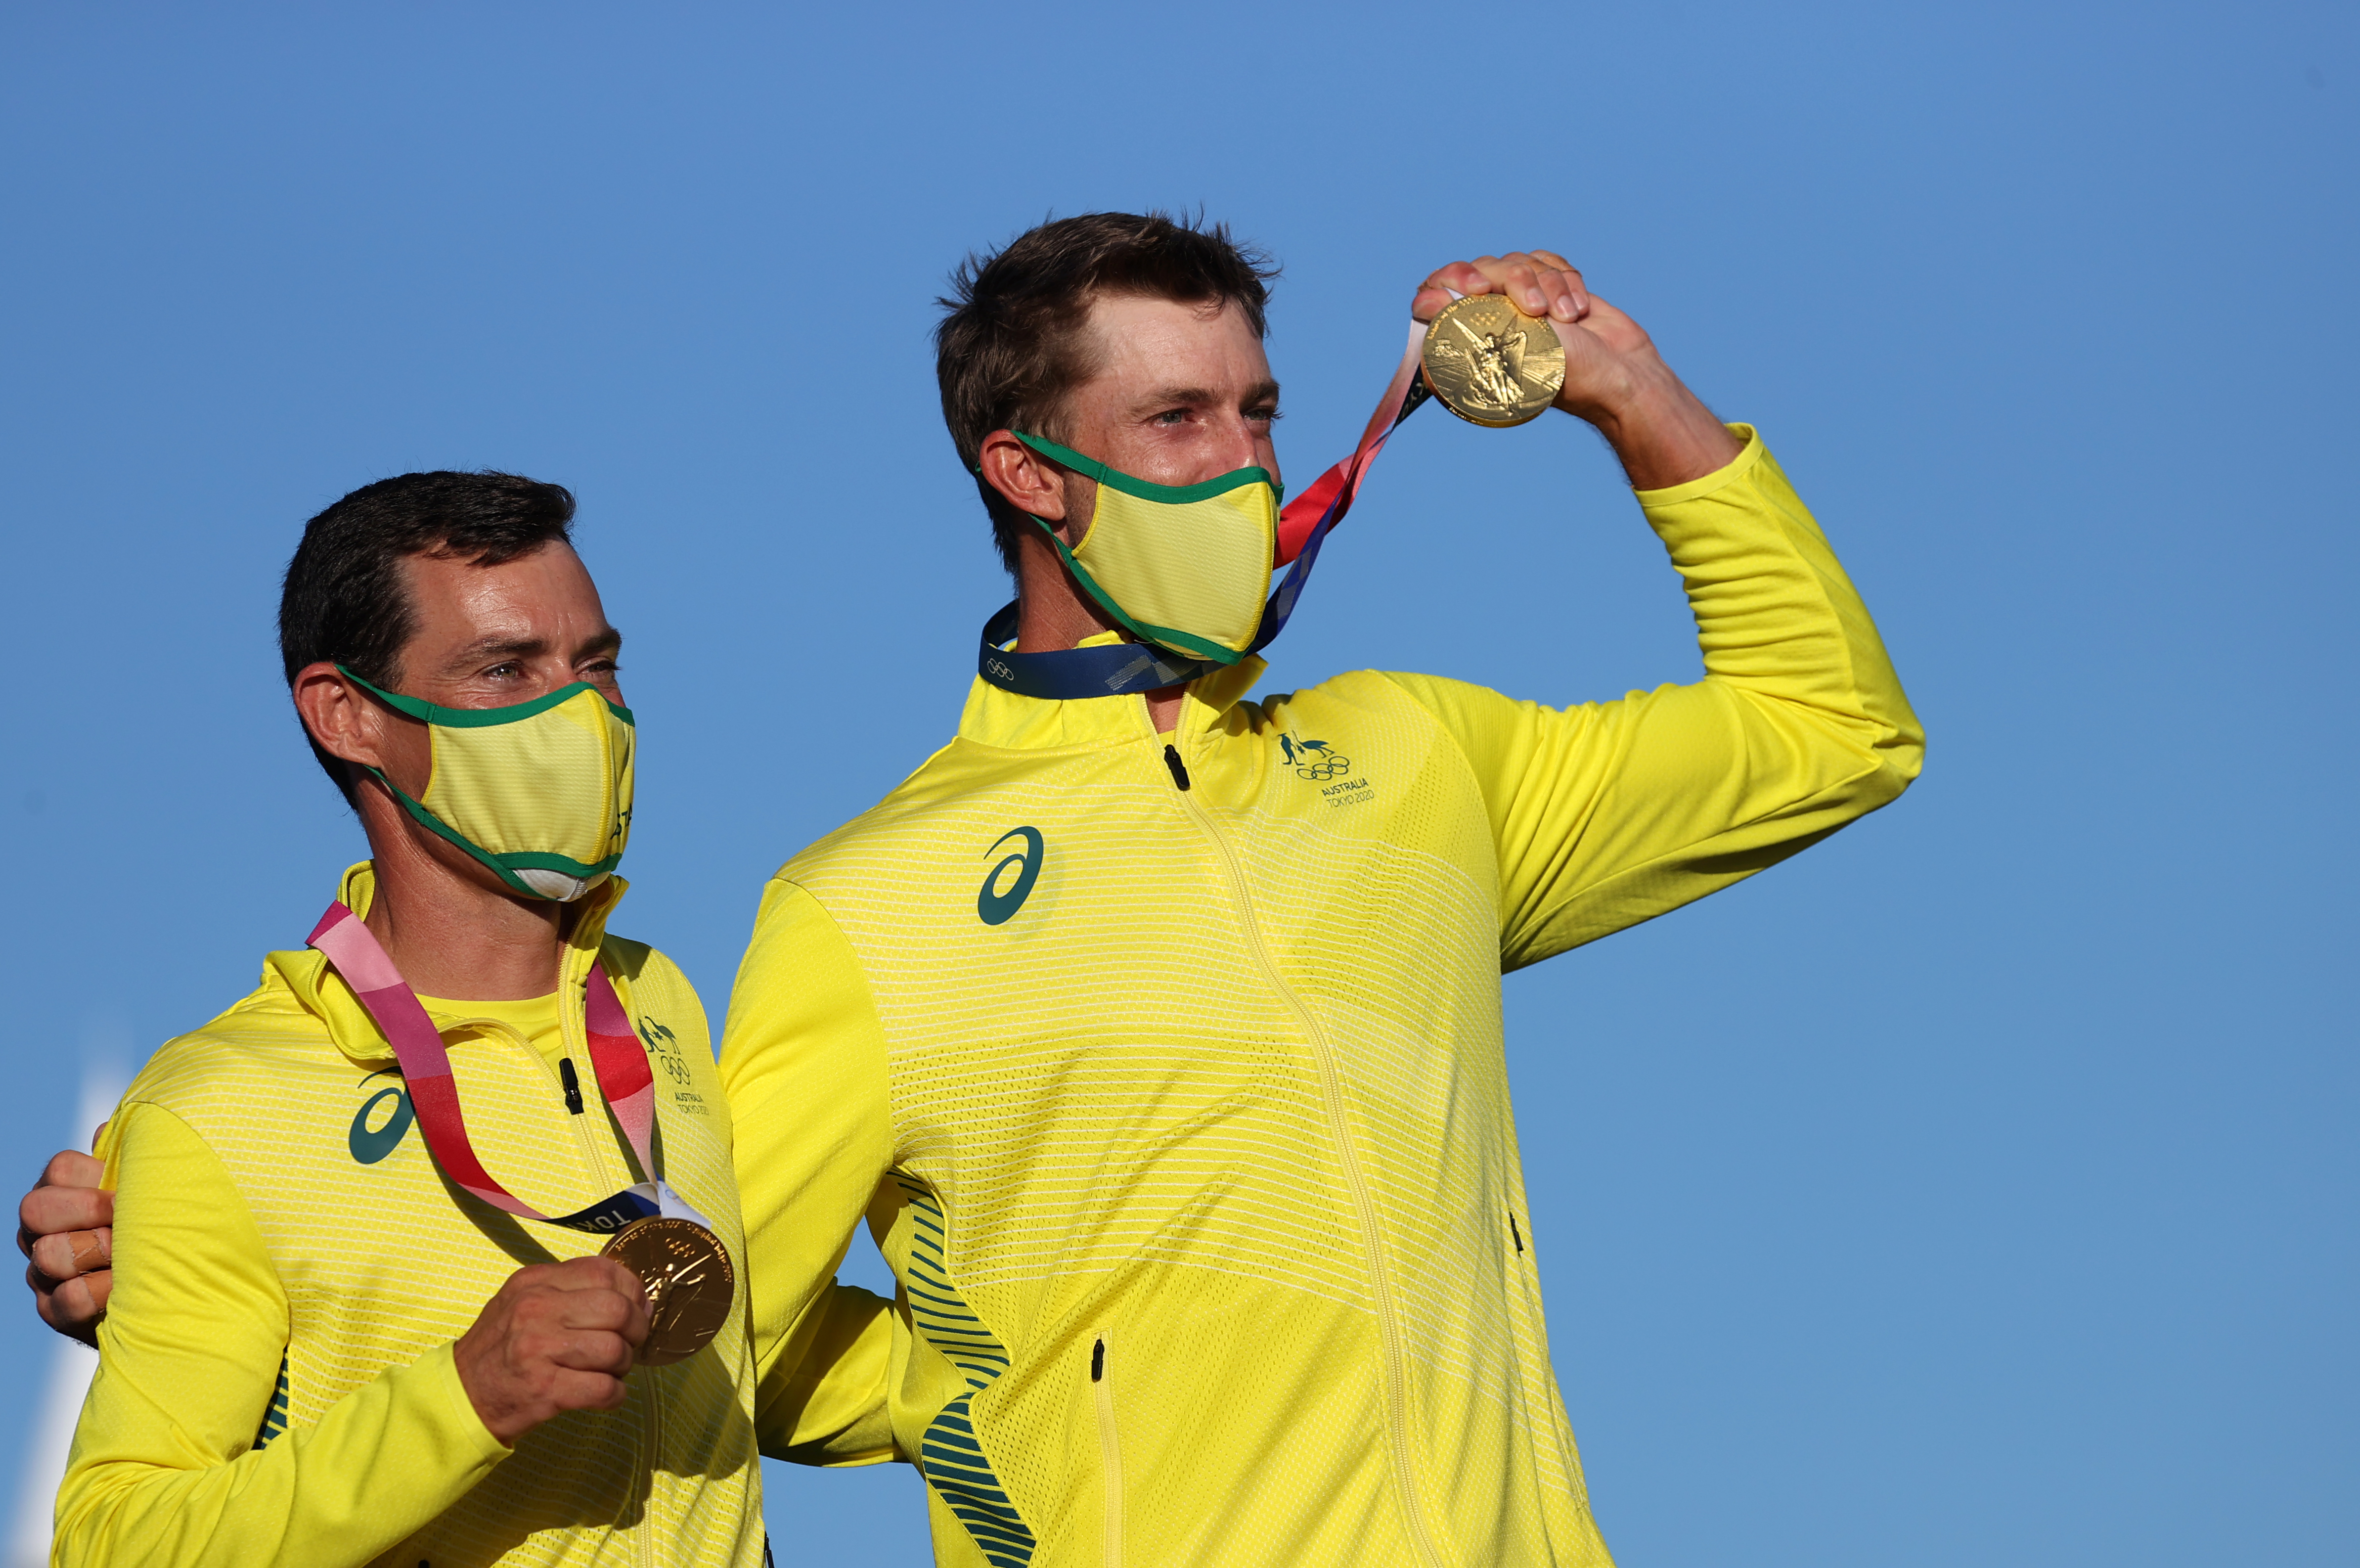 Los medallistas de oro Mathew Belcher y Will Ryan de Australia festejan su triunfo en la disciplina de vela.